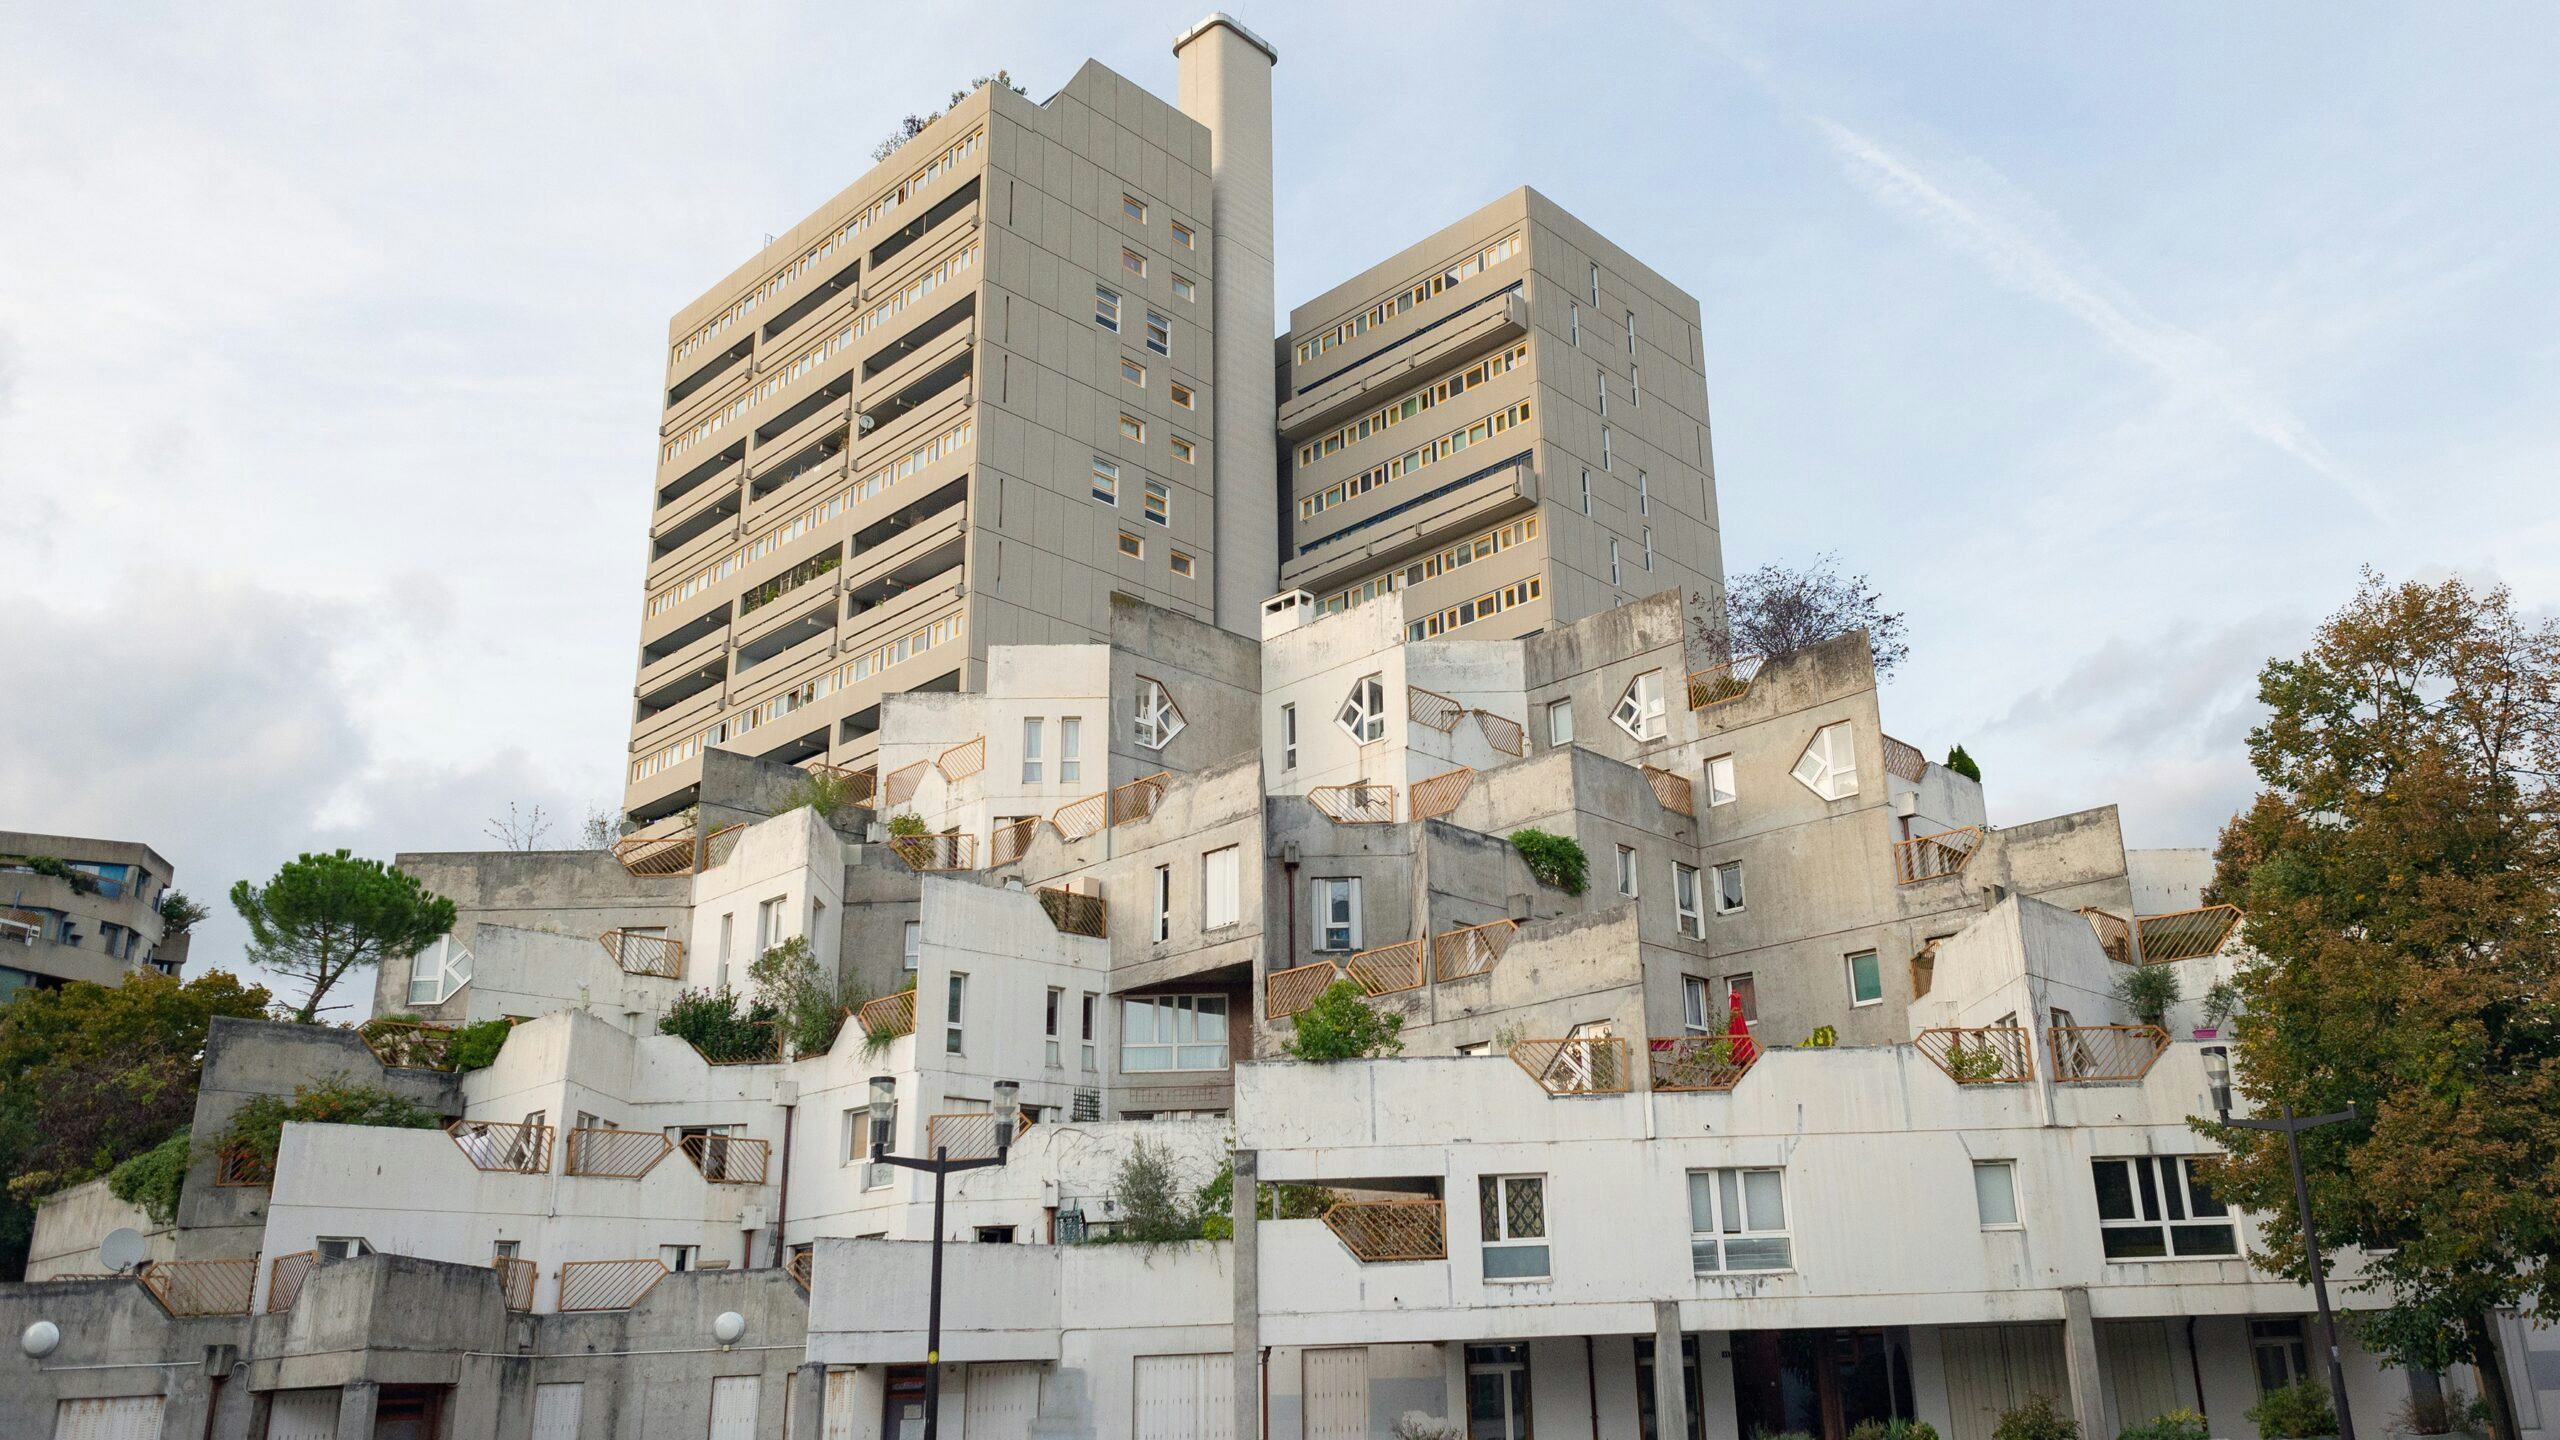 Sociale huurwoningen in Ivry-sur-Seine, een banlieue van Parijs. 